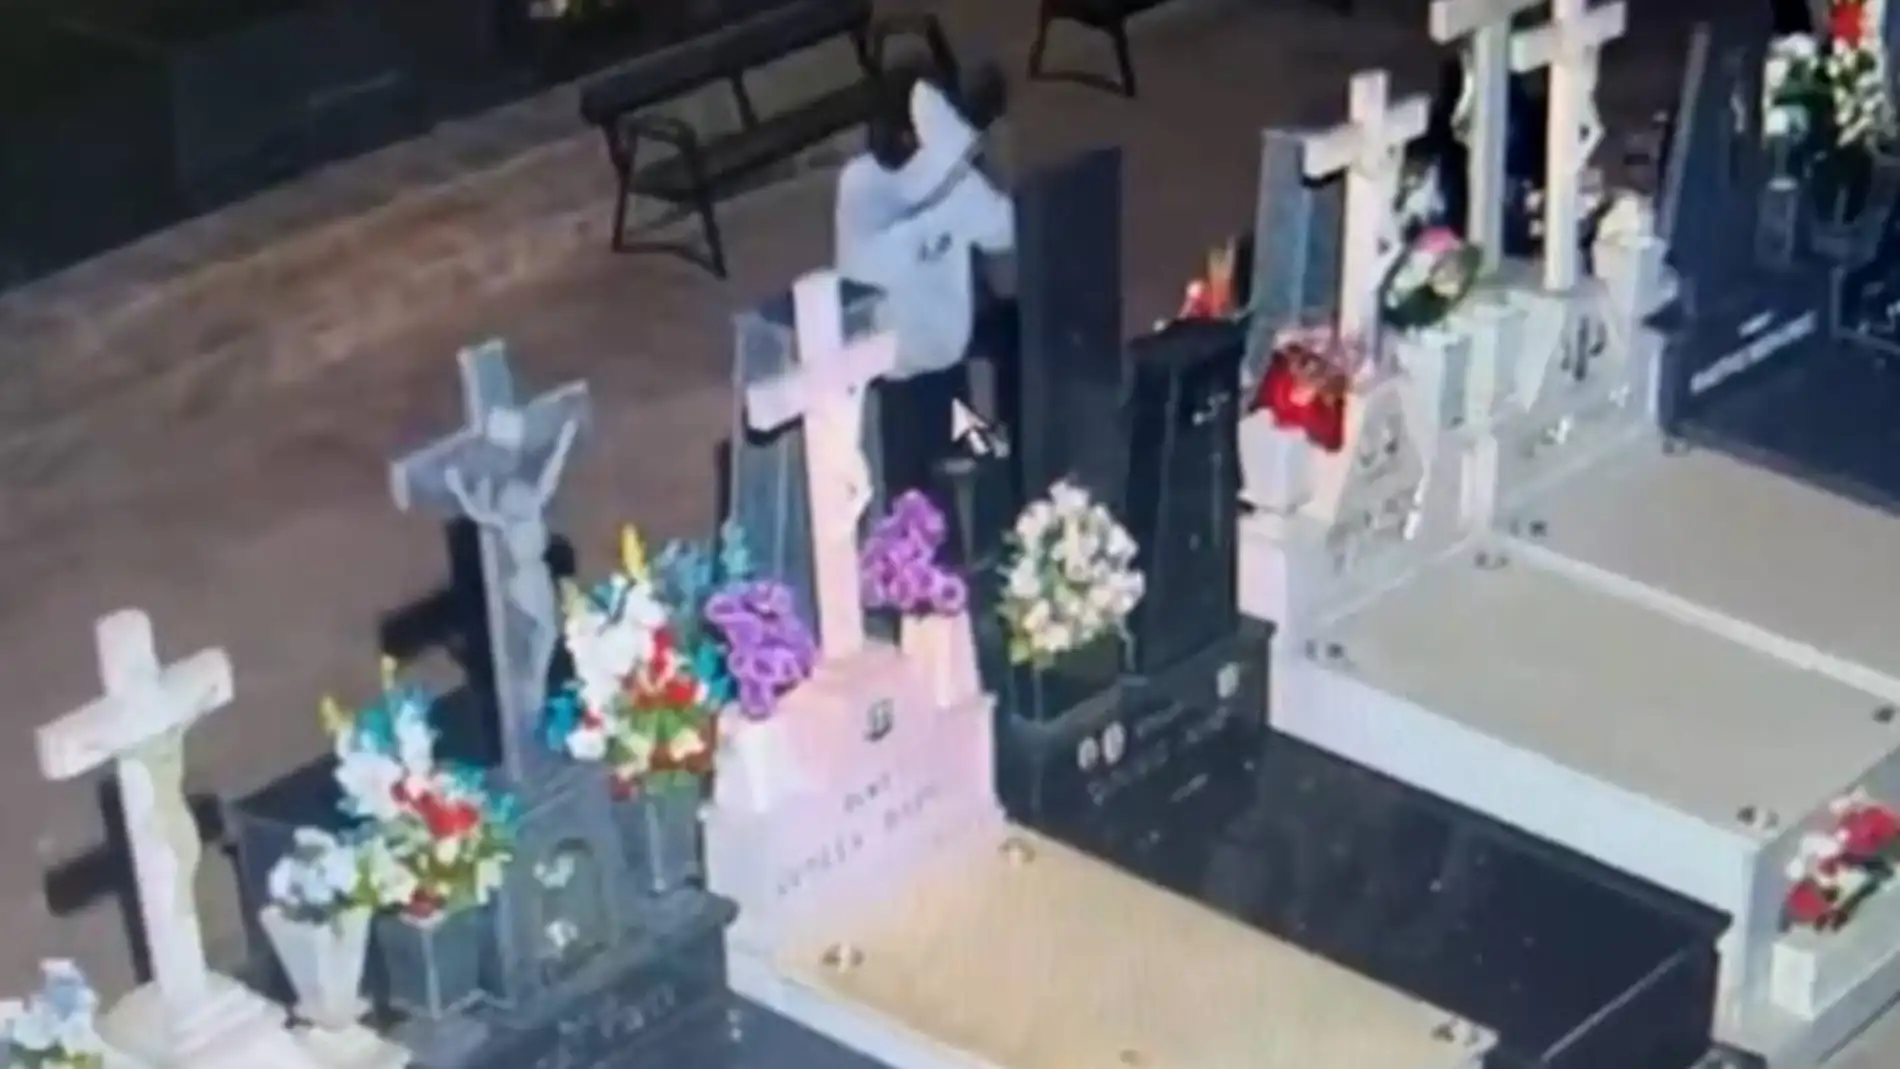 Causan daños en una treintena de panteones del cementerio de Espinardo